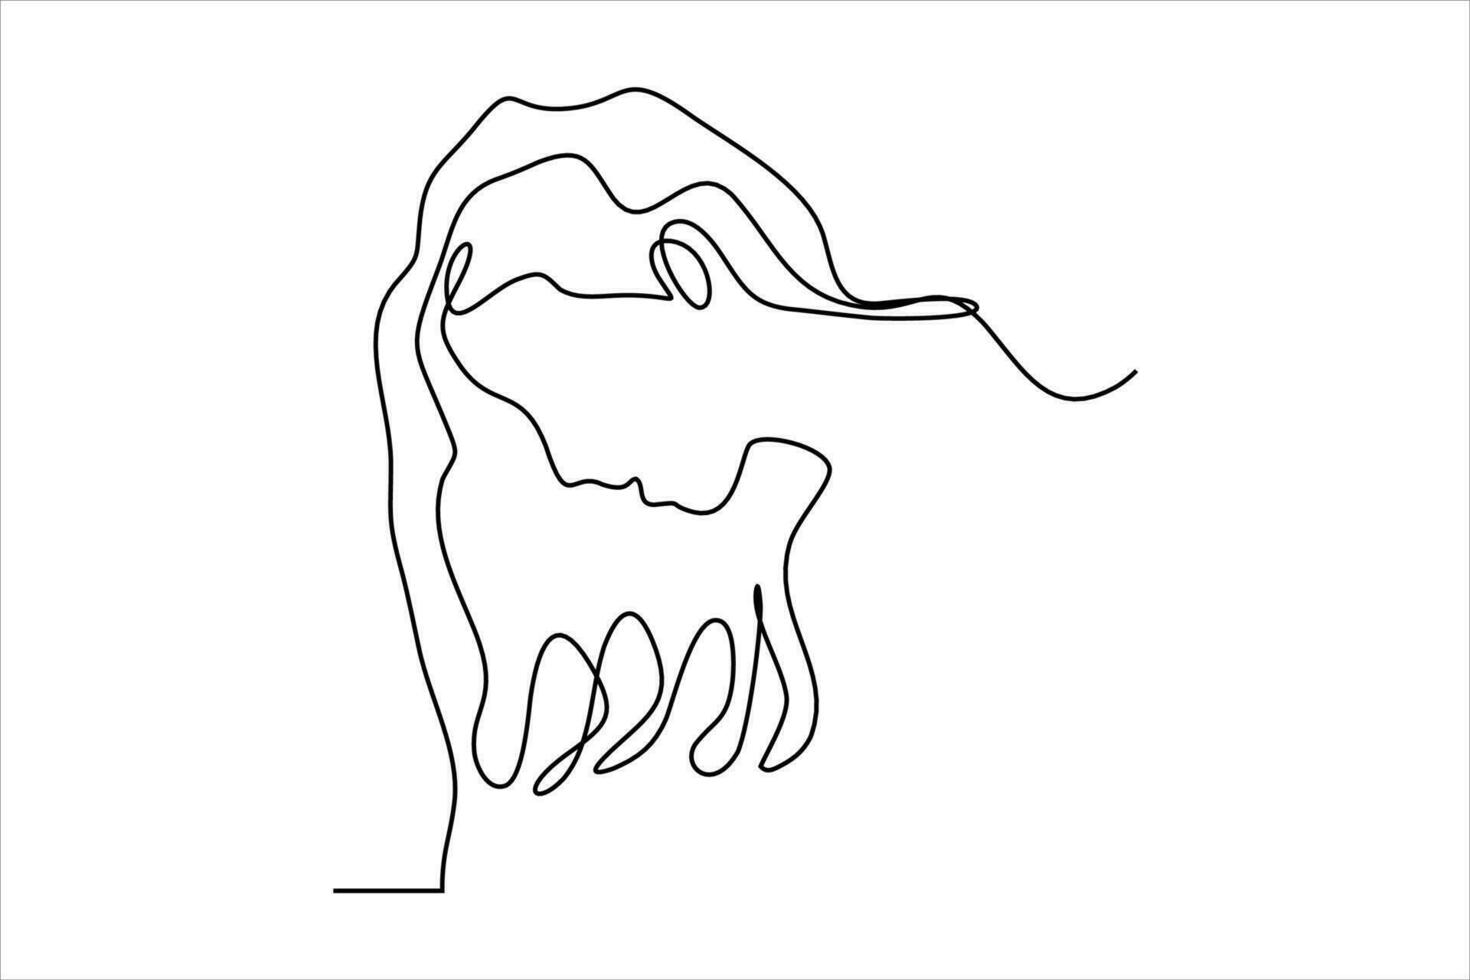 doorlopend lijn tekening. abstract portret van een vrouw kant visie. vector illustratie.